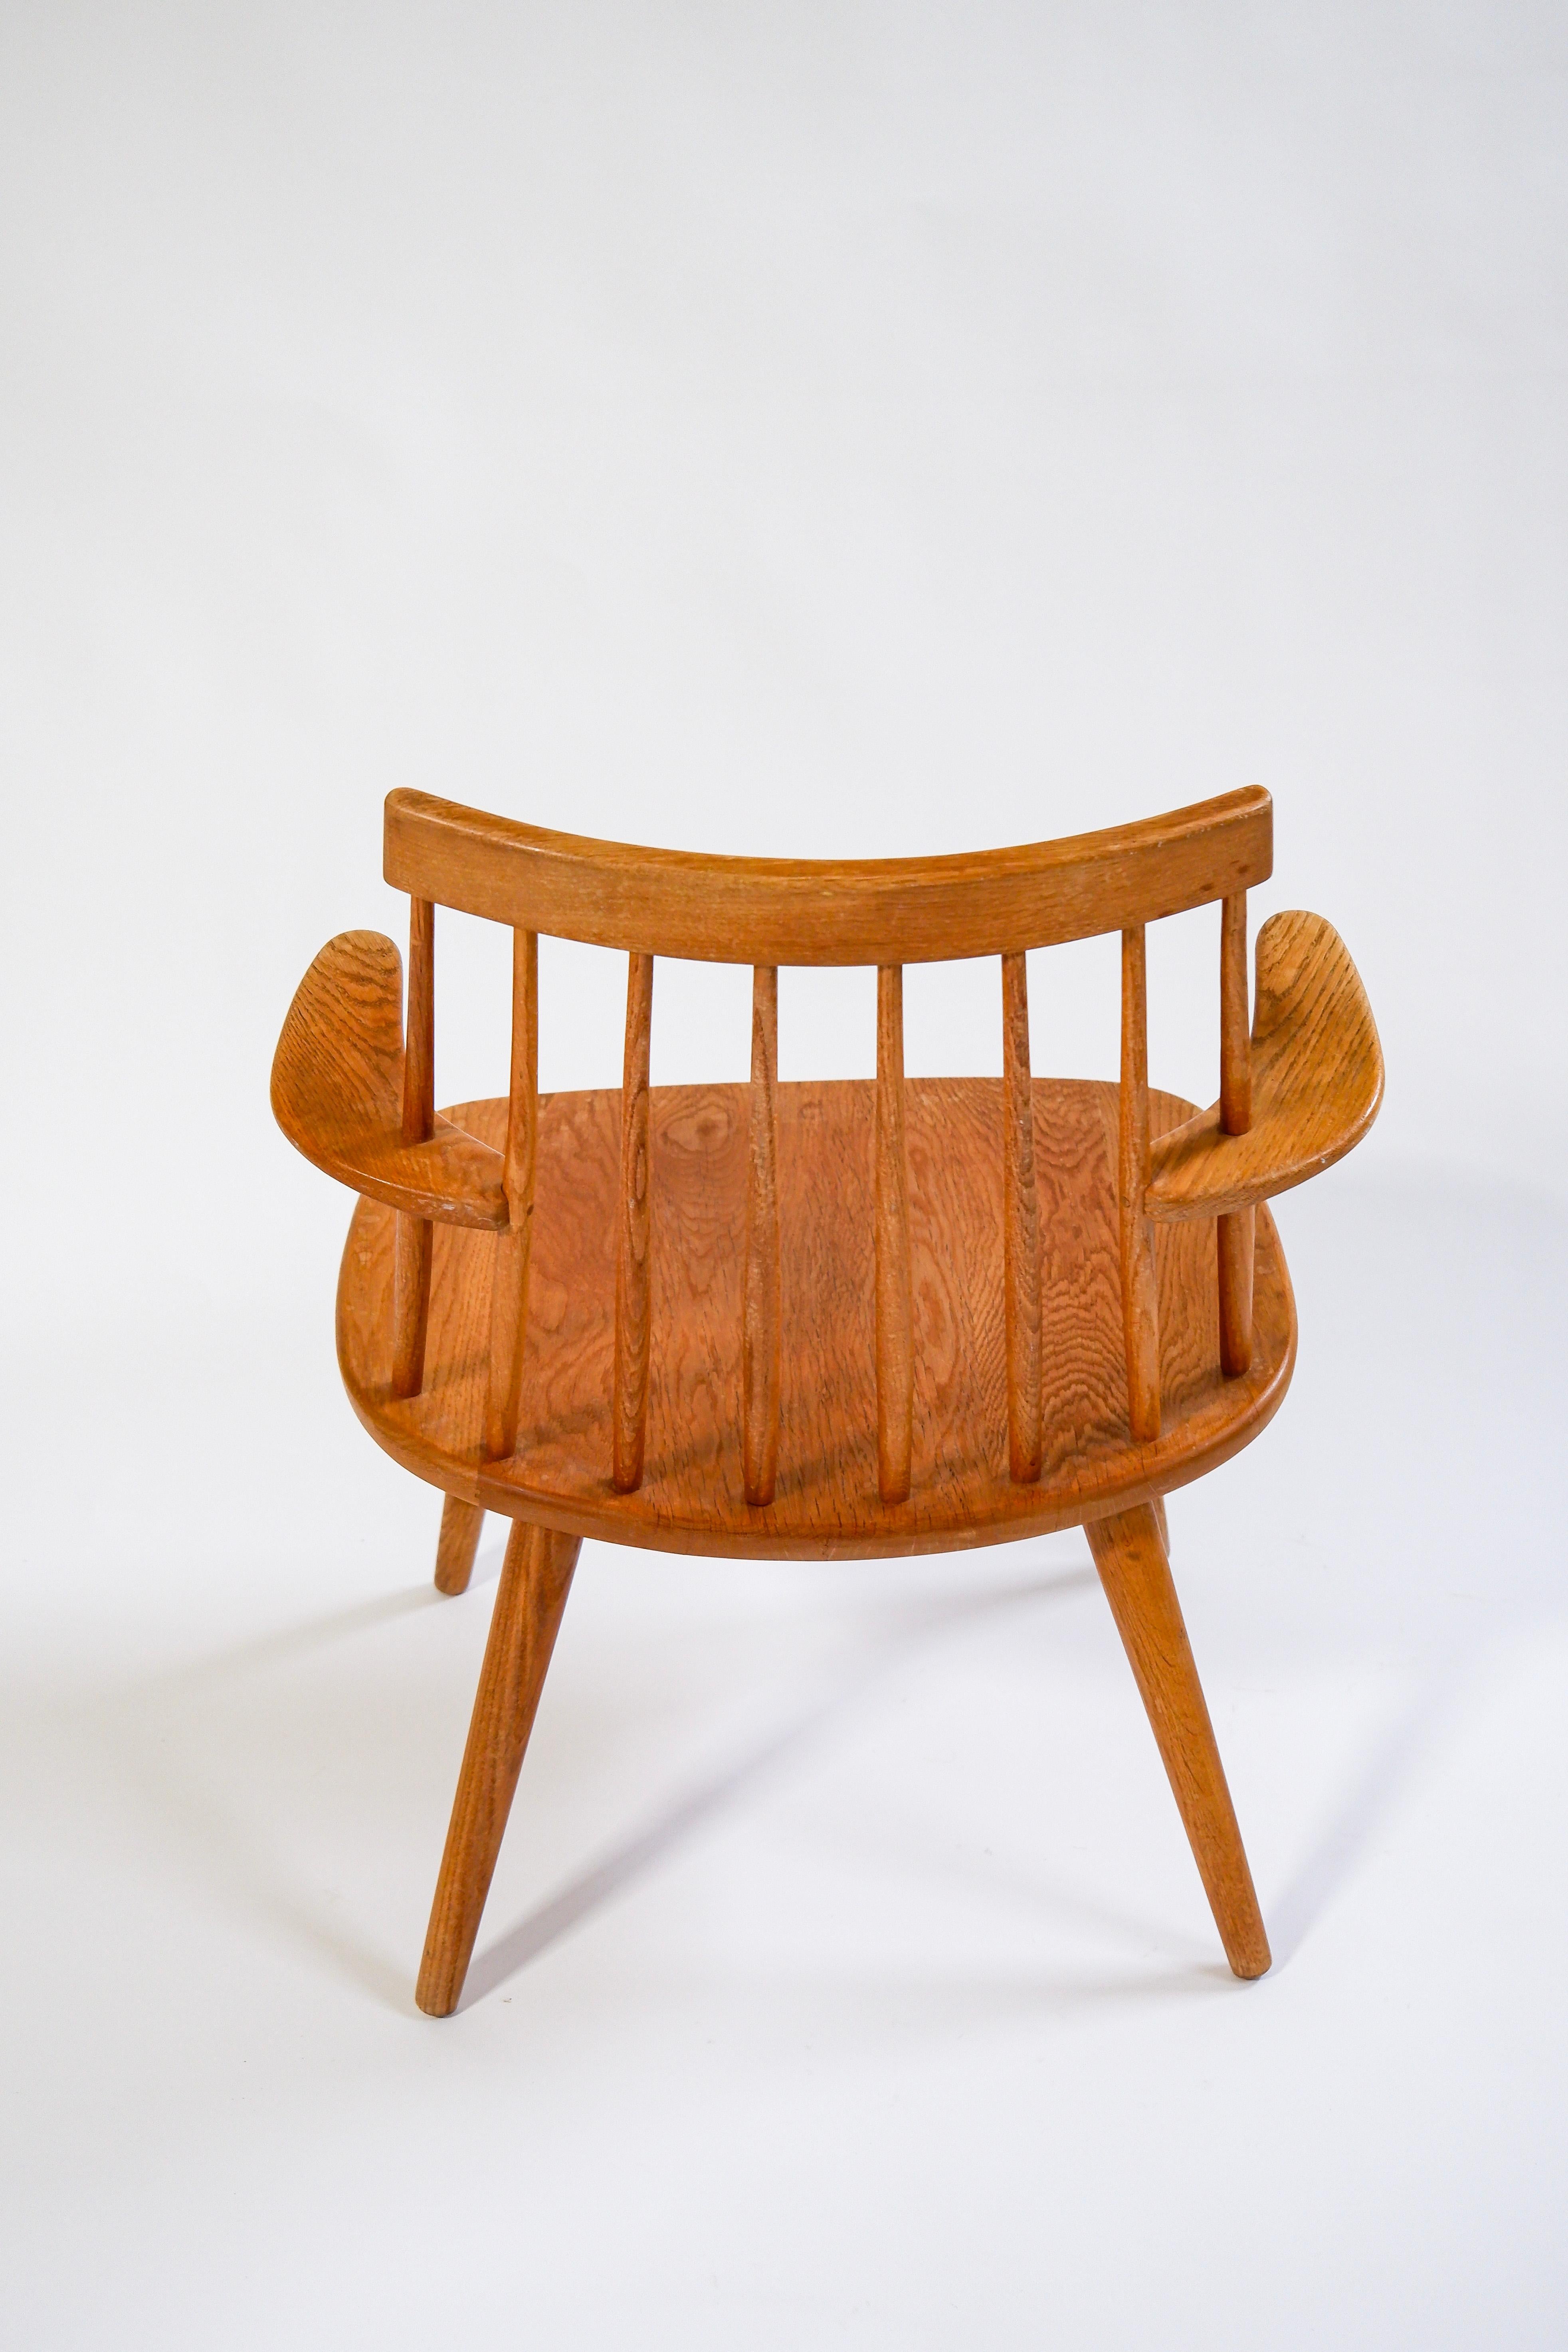 Yngve Ekström Armlehnstuhl Modell Sibbo aus massiver Eiche, entworfen 1955 für Stolab AB in Schweden. Guter Zustand des Overhall. Original-Kissen verfügbar. Yngve Ekström ist einer der einflussreichsten Designer seiner Zeit in Schweden in der